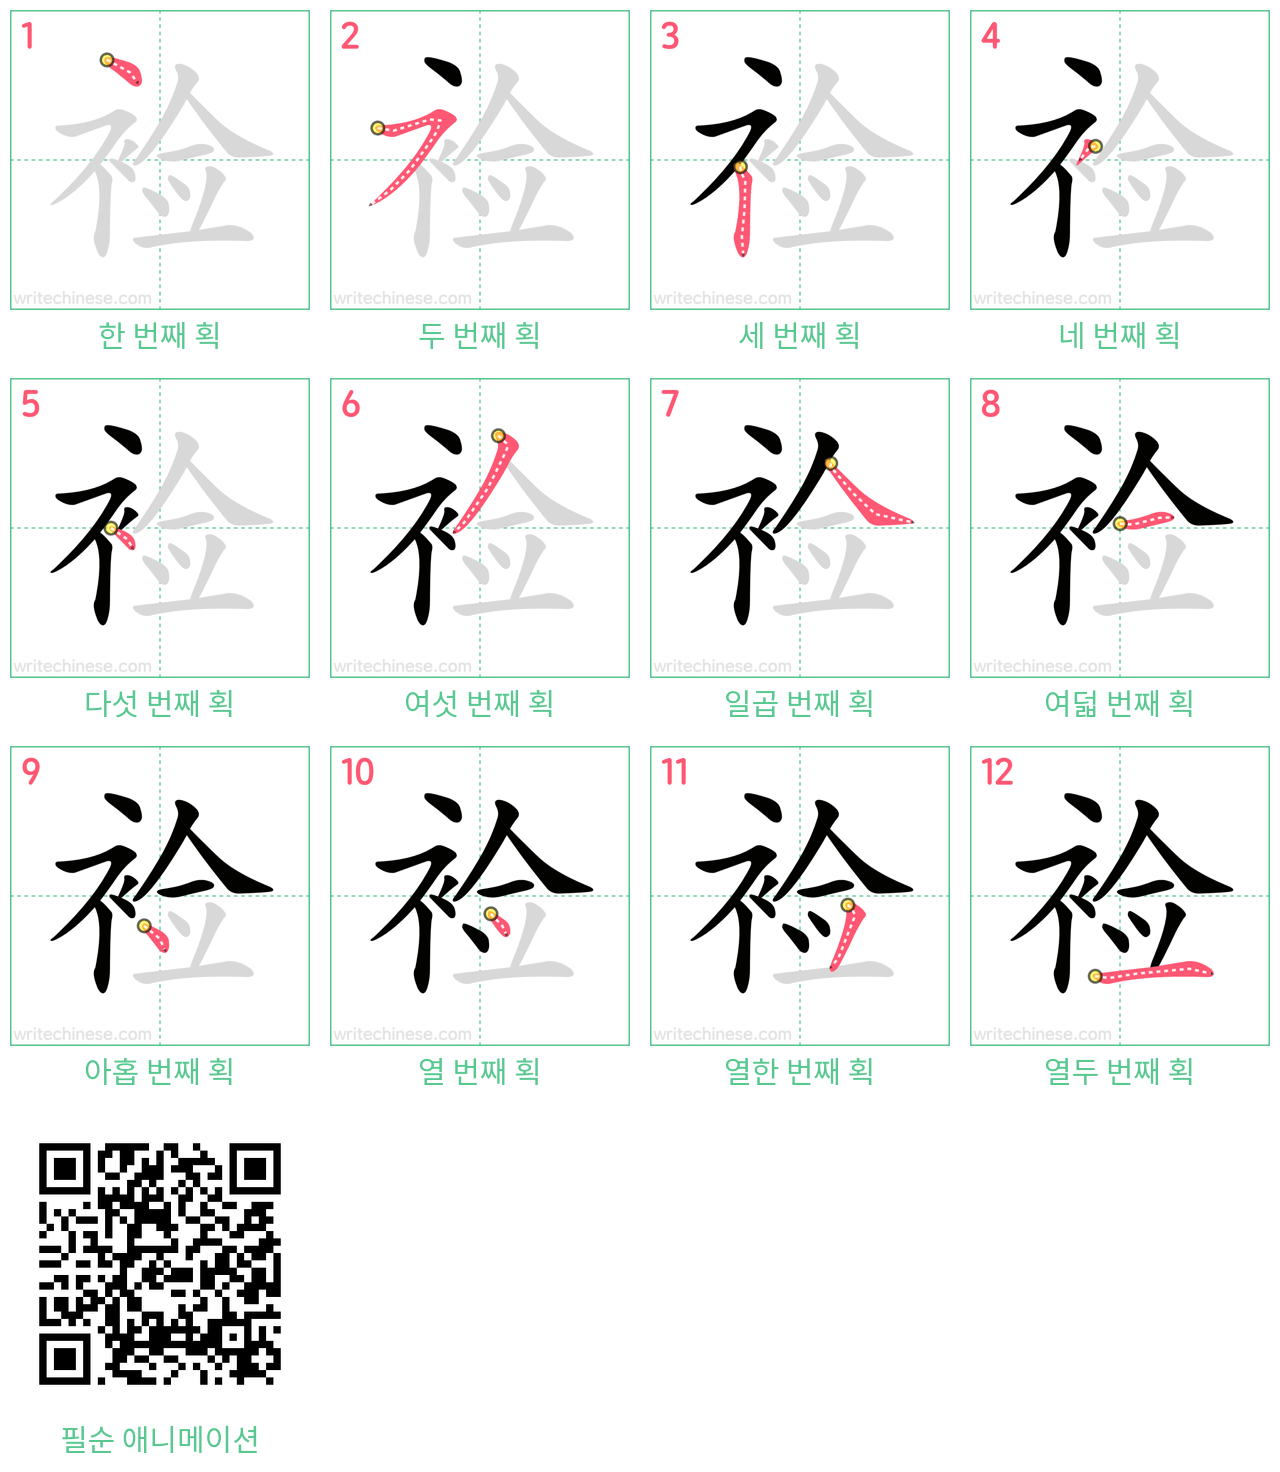 裣 step-by-step stroke order diagrams